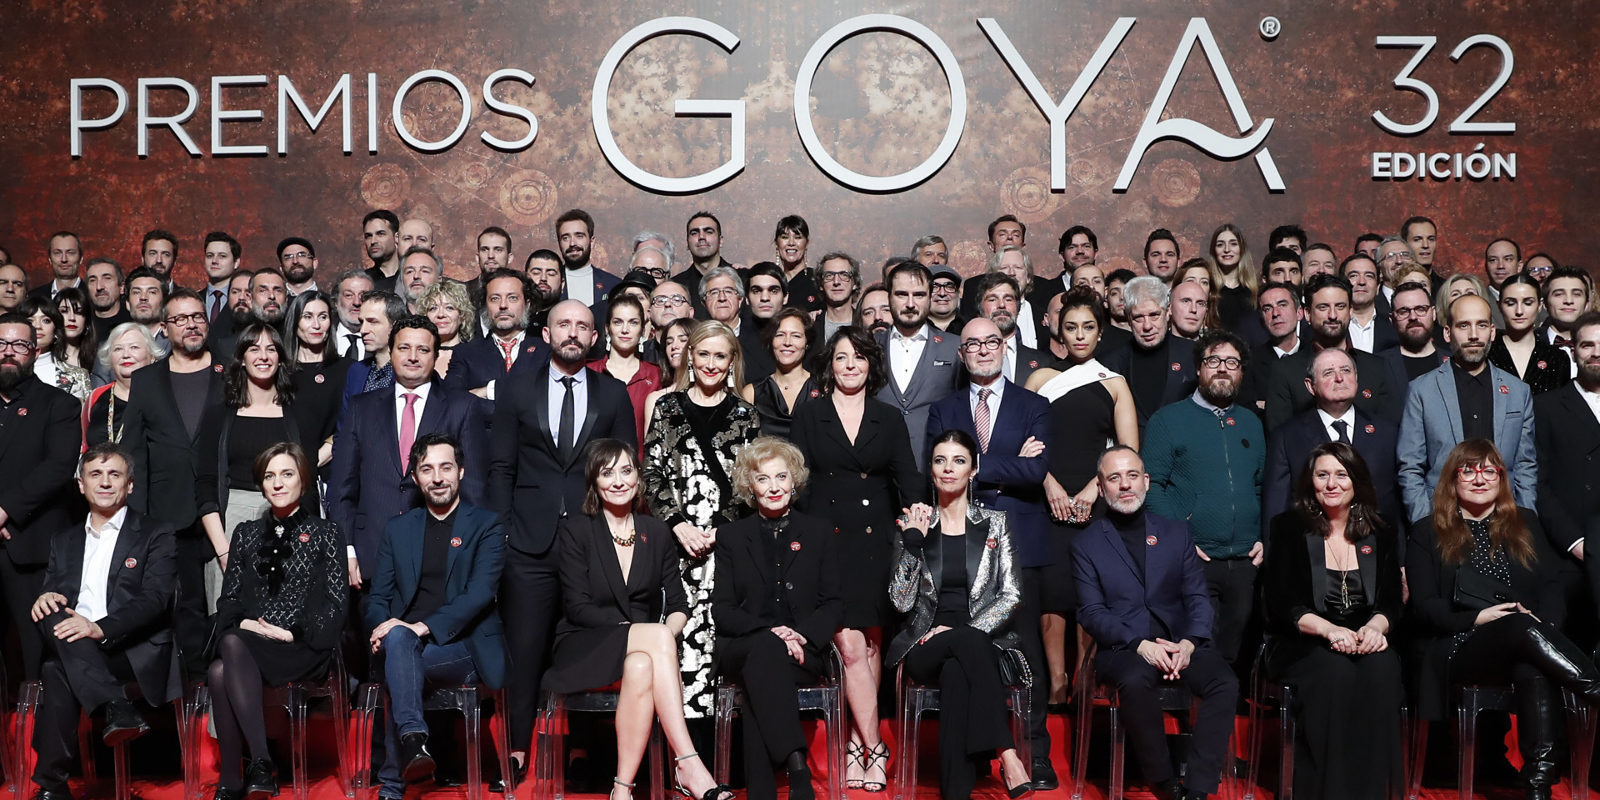 Lista completa de los ganadores en los Premios Goya 2018